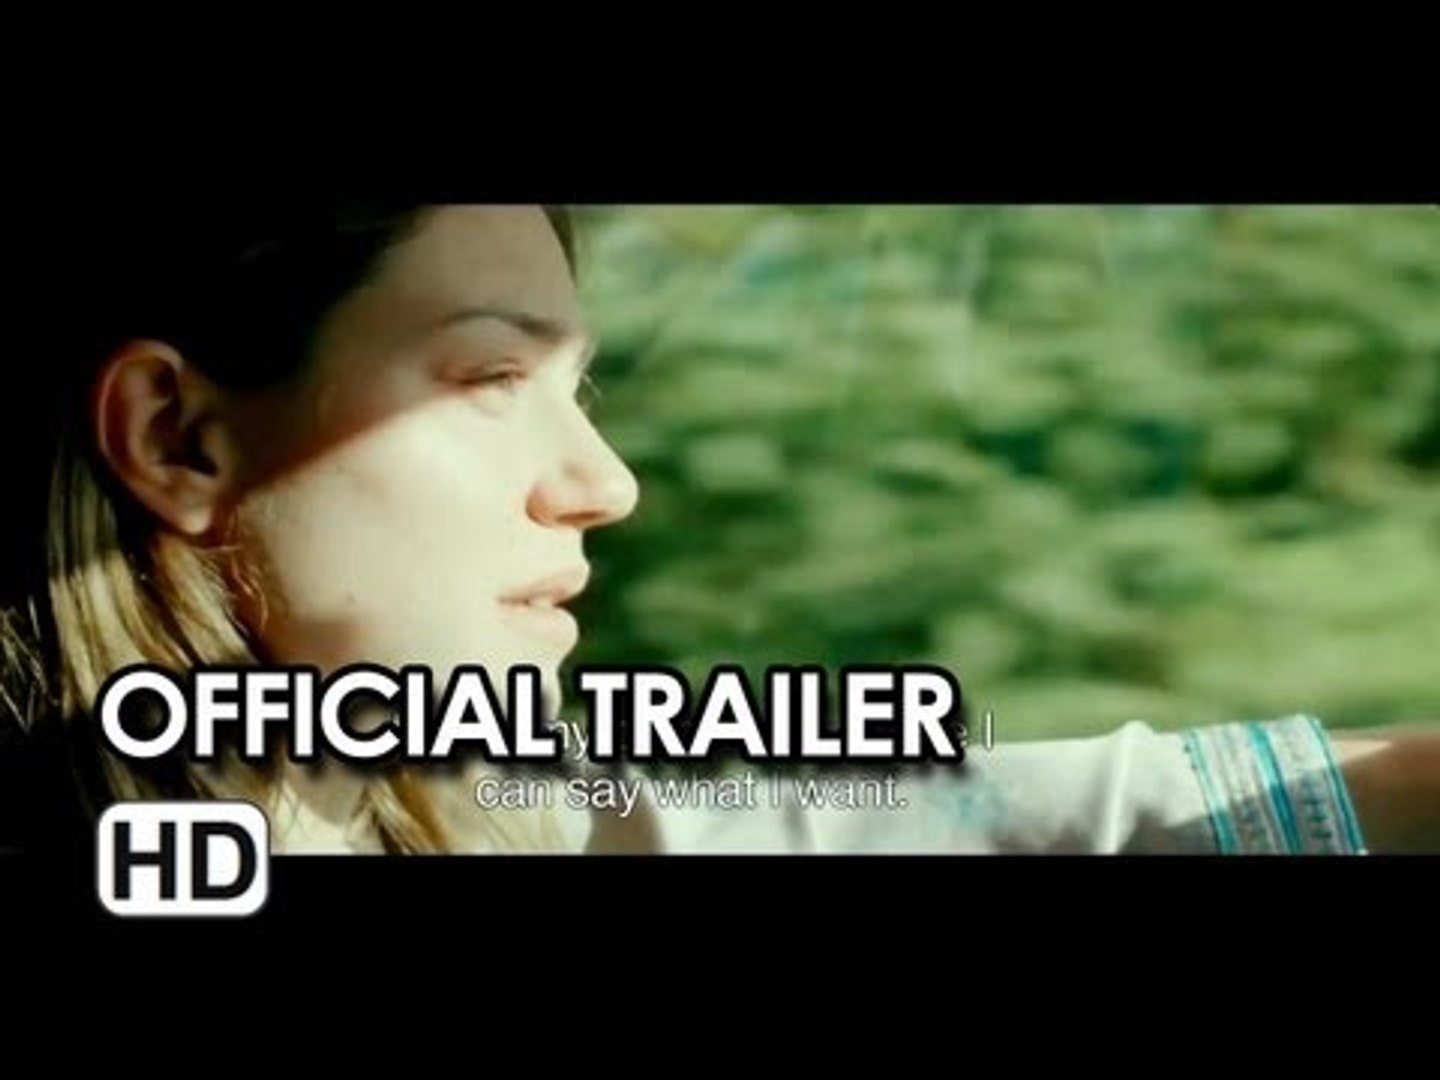 Our Children (À perdre la raison) Official Trailer (2013) - Video  Dailymotion